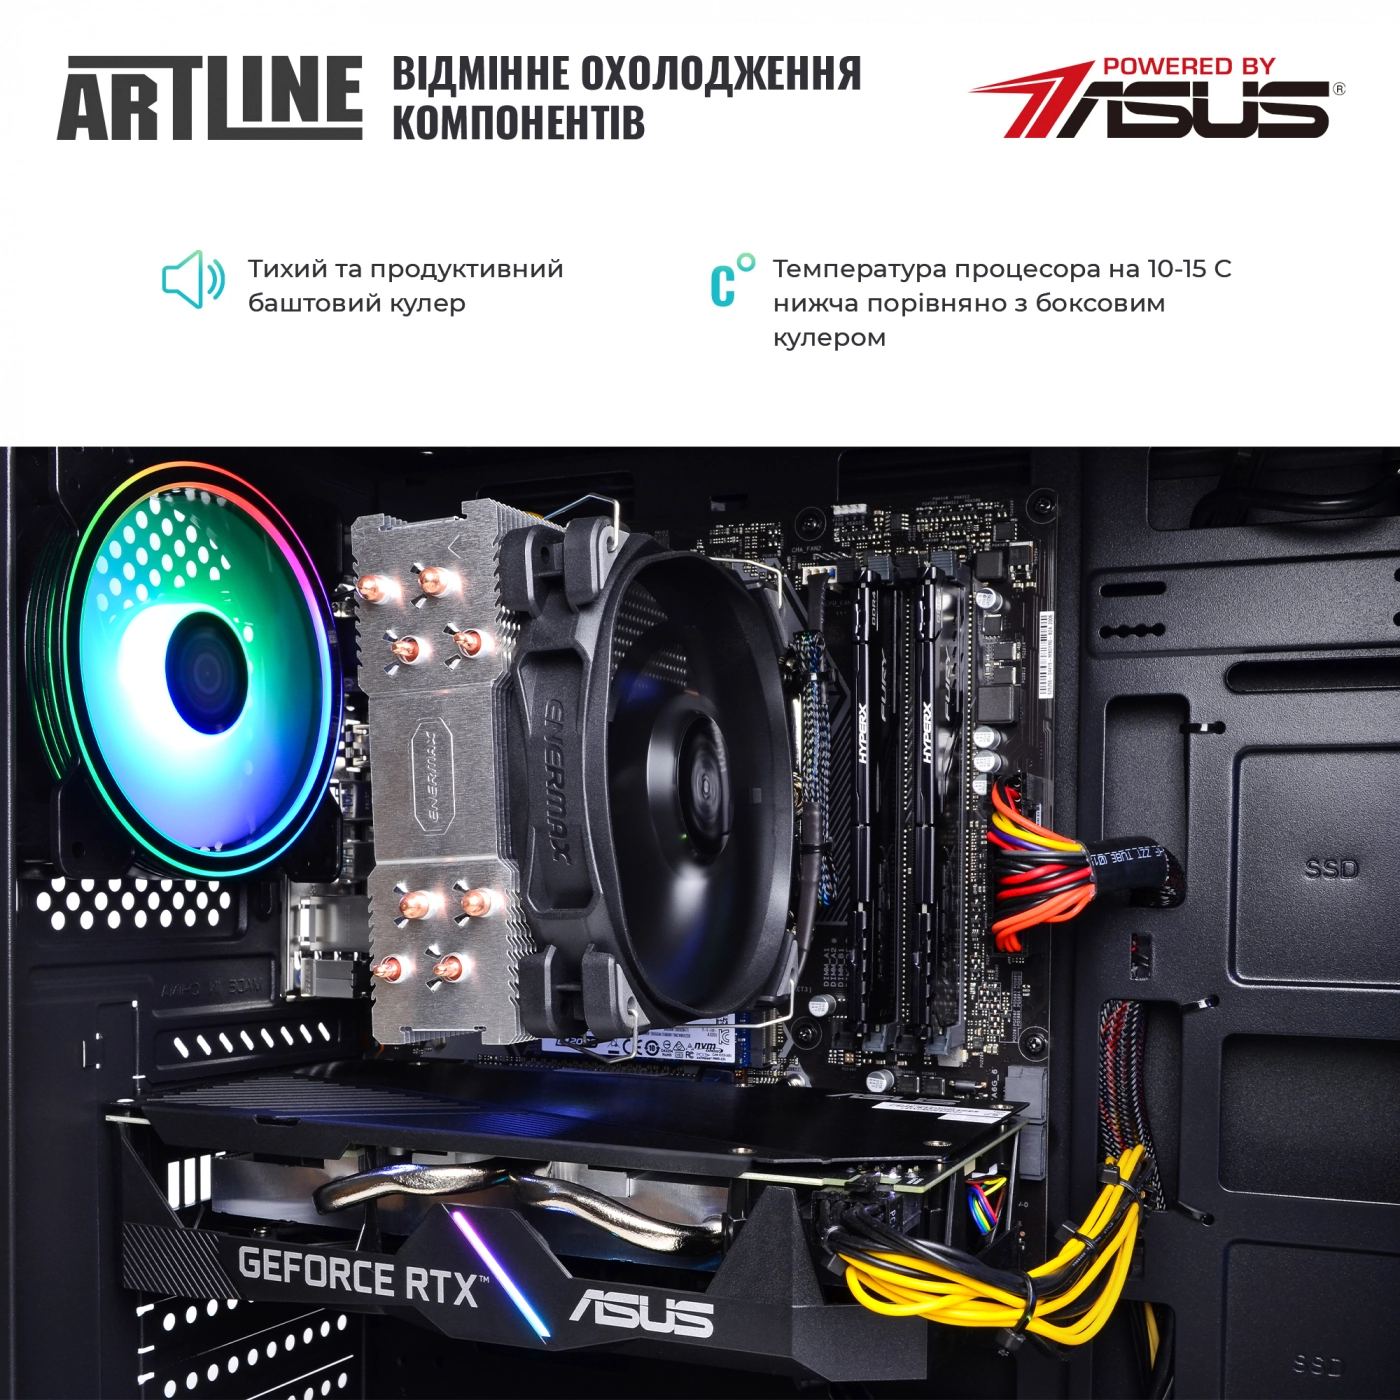 Купить Компьютер ARTLINE Gaming X54v02 - фото 7